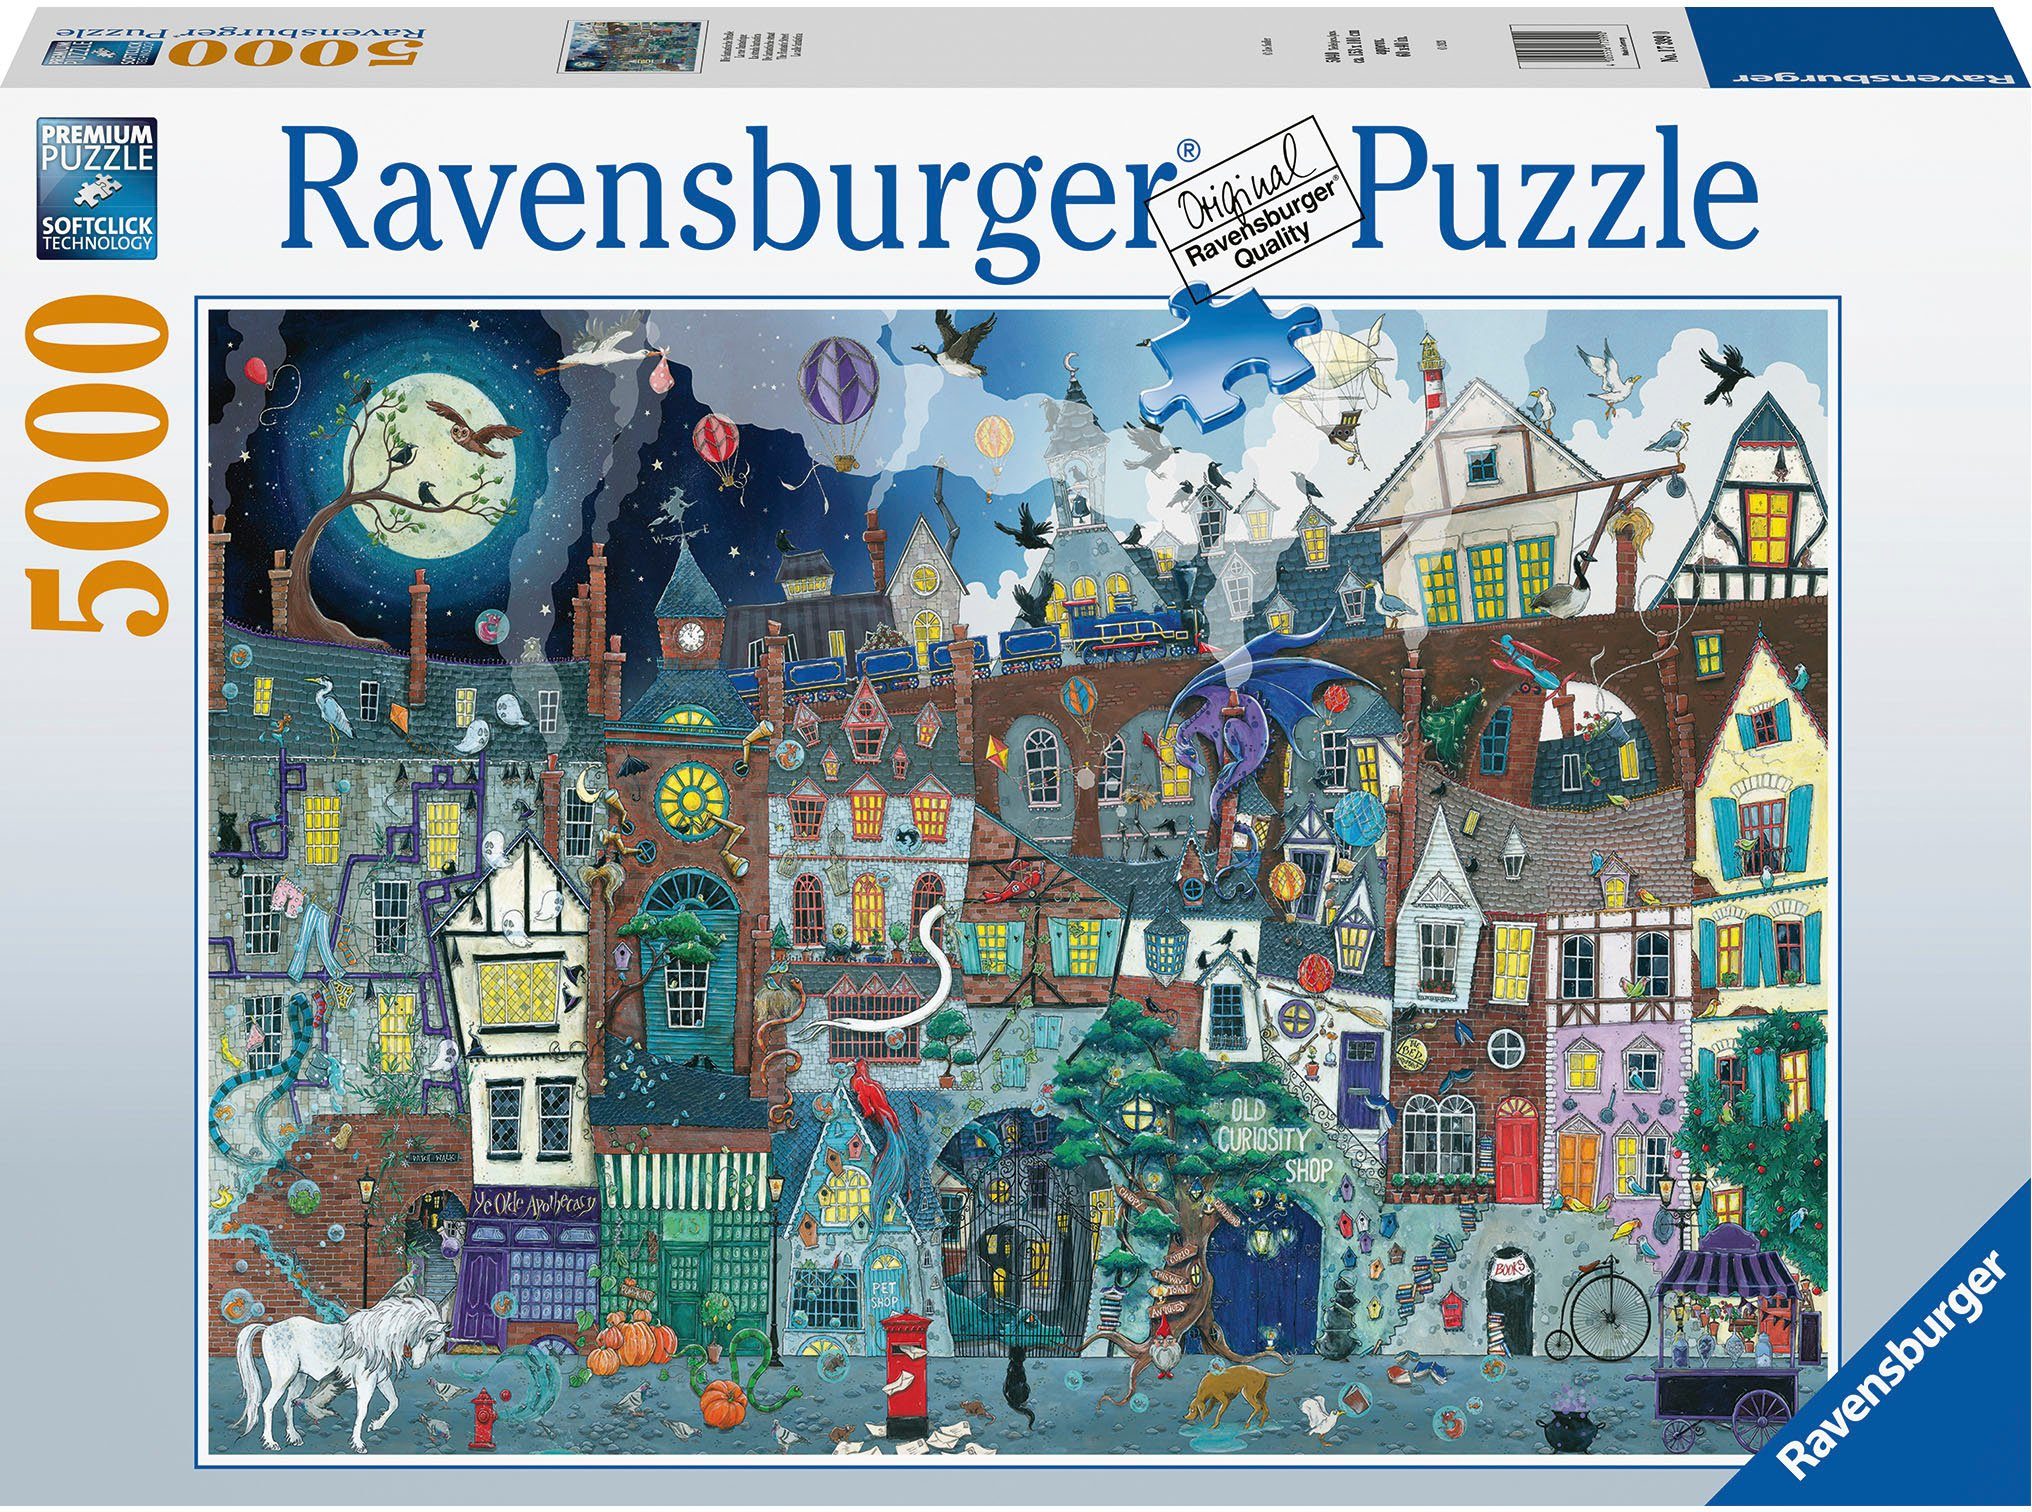 Ravensburger Puzzle Die fantastische Straße, 5000 Puzzleteile, Made in Germany; FSC® - schützt Wald - weltweit | Puzzle